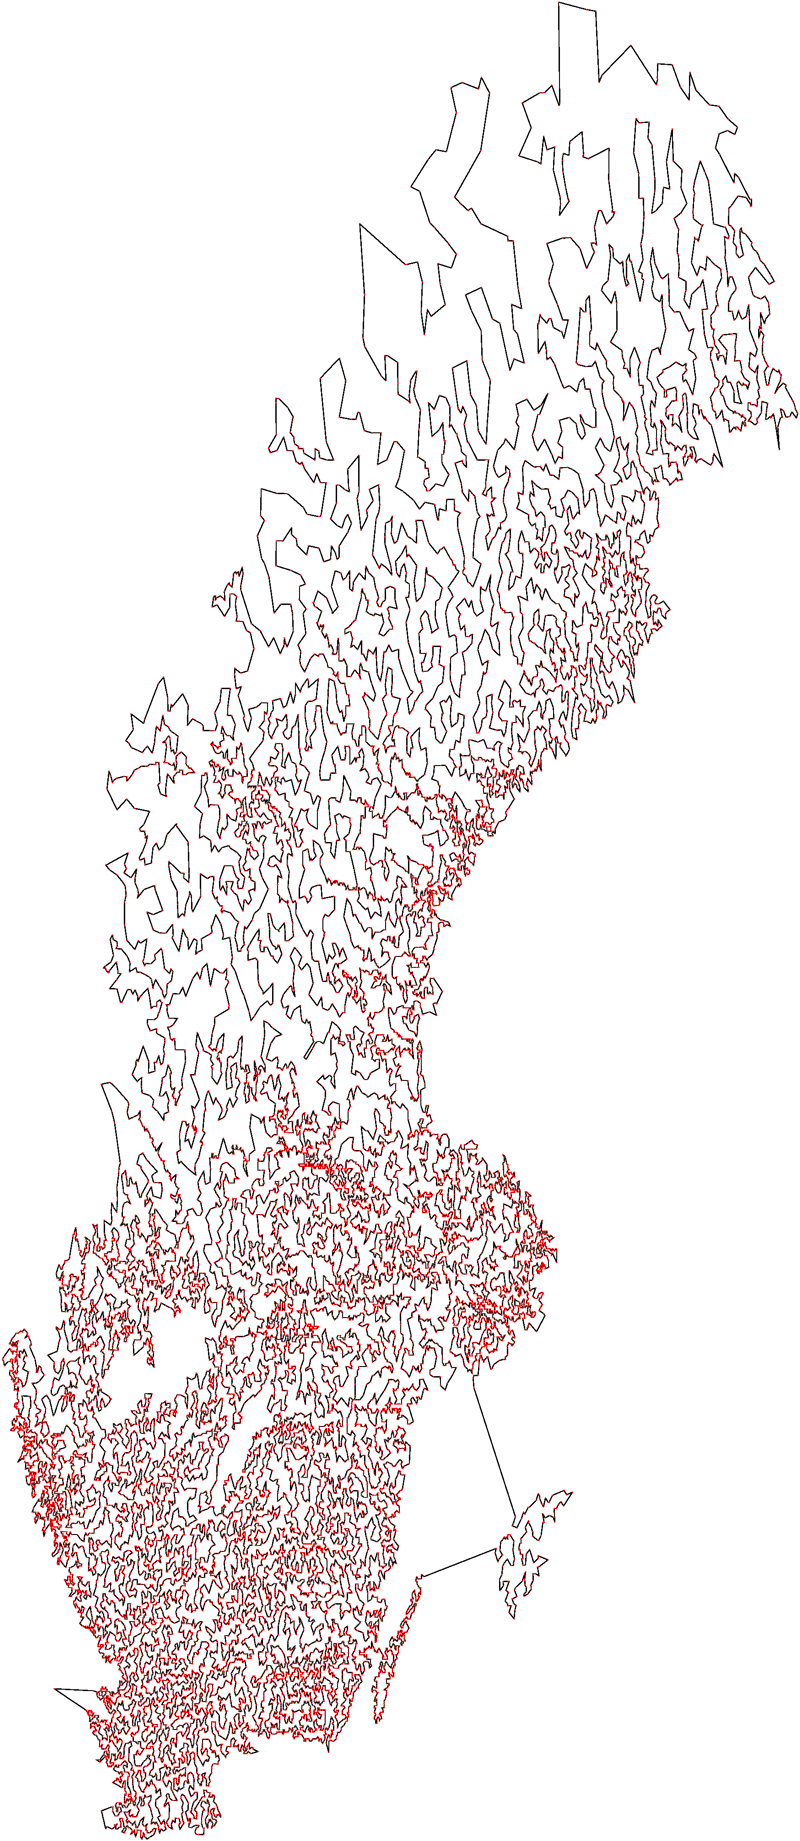 TSP: Minimal HAM- CYCLE i komplett, vektet graf Minimal Hamilton-tur (altså en TSP-løsning) gjennom Sverige (24,978 byer), funnet i 2004 en rekort (på det tidspunktet).